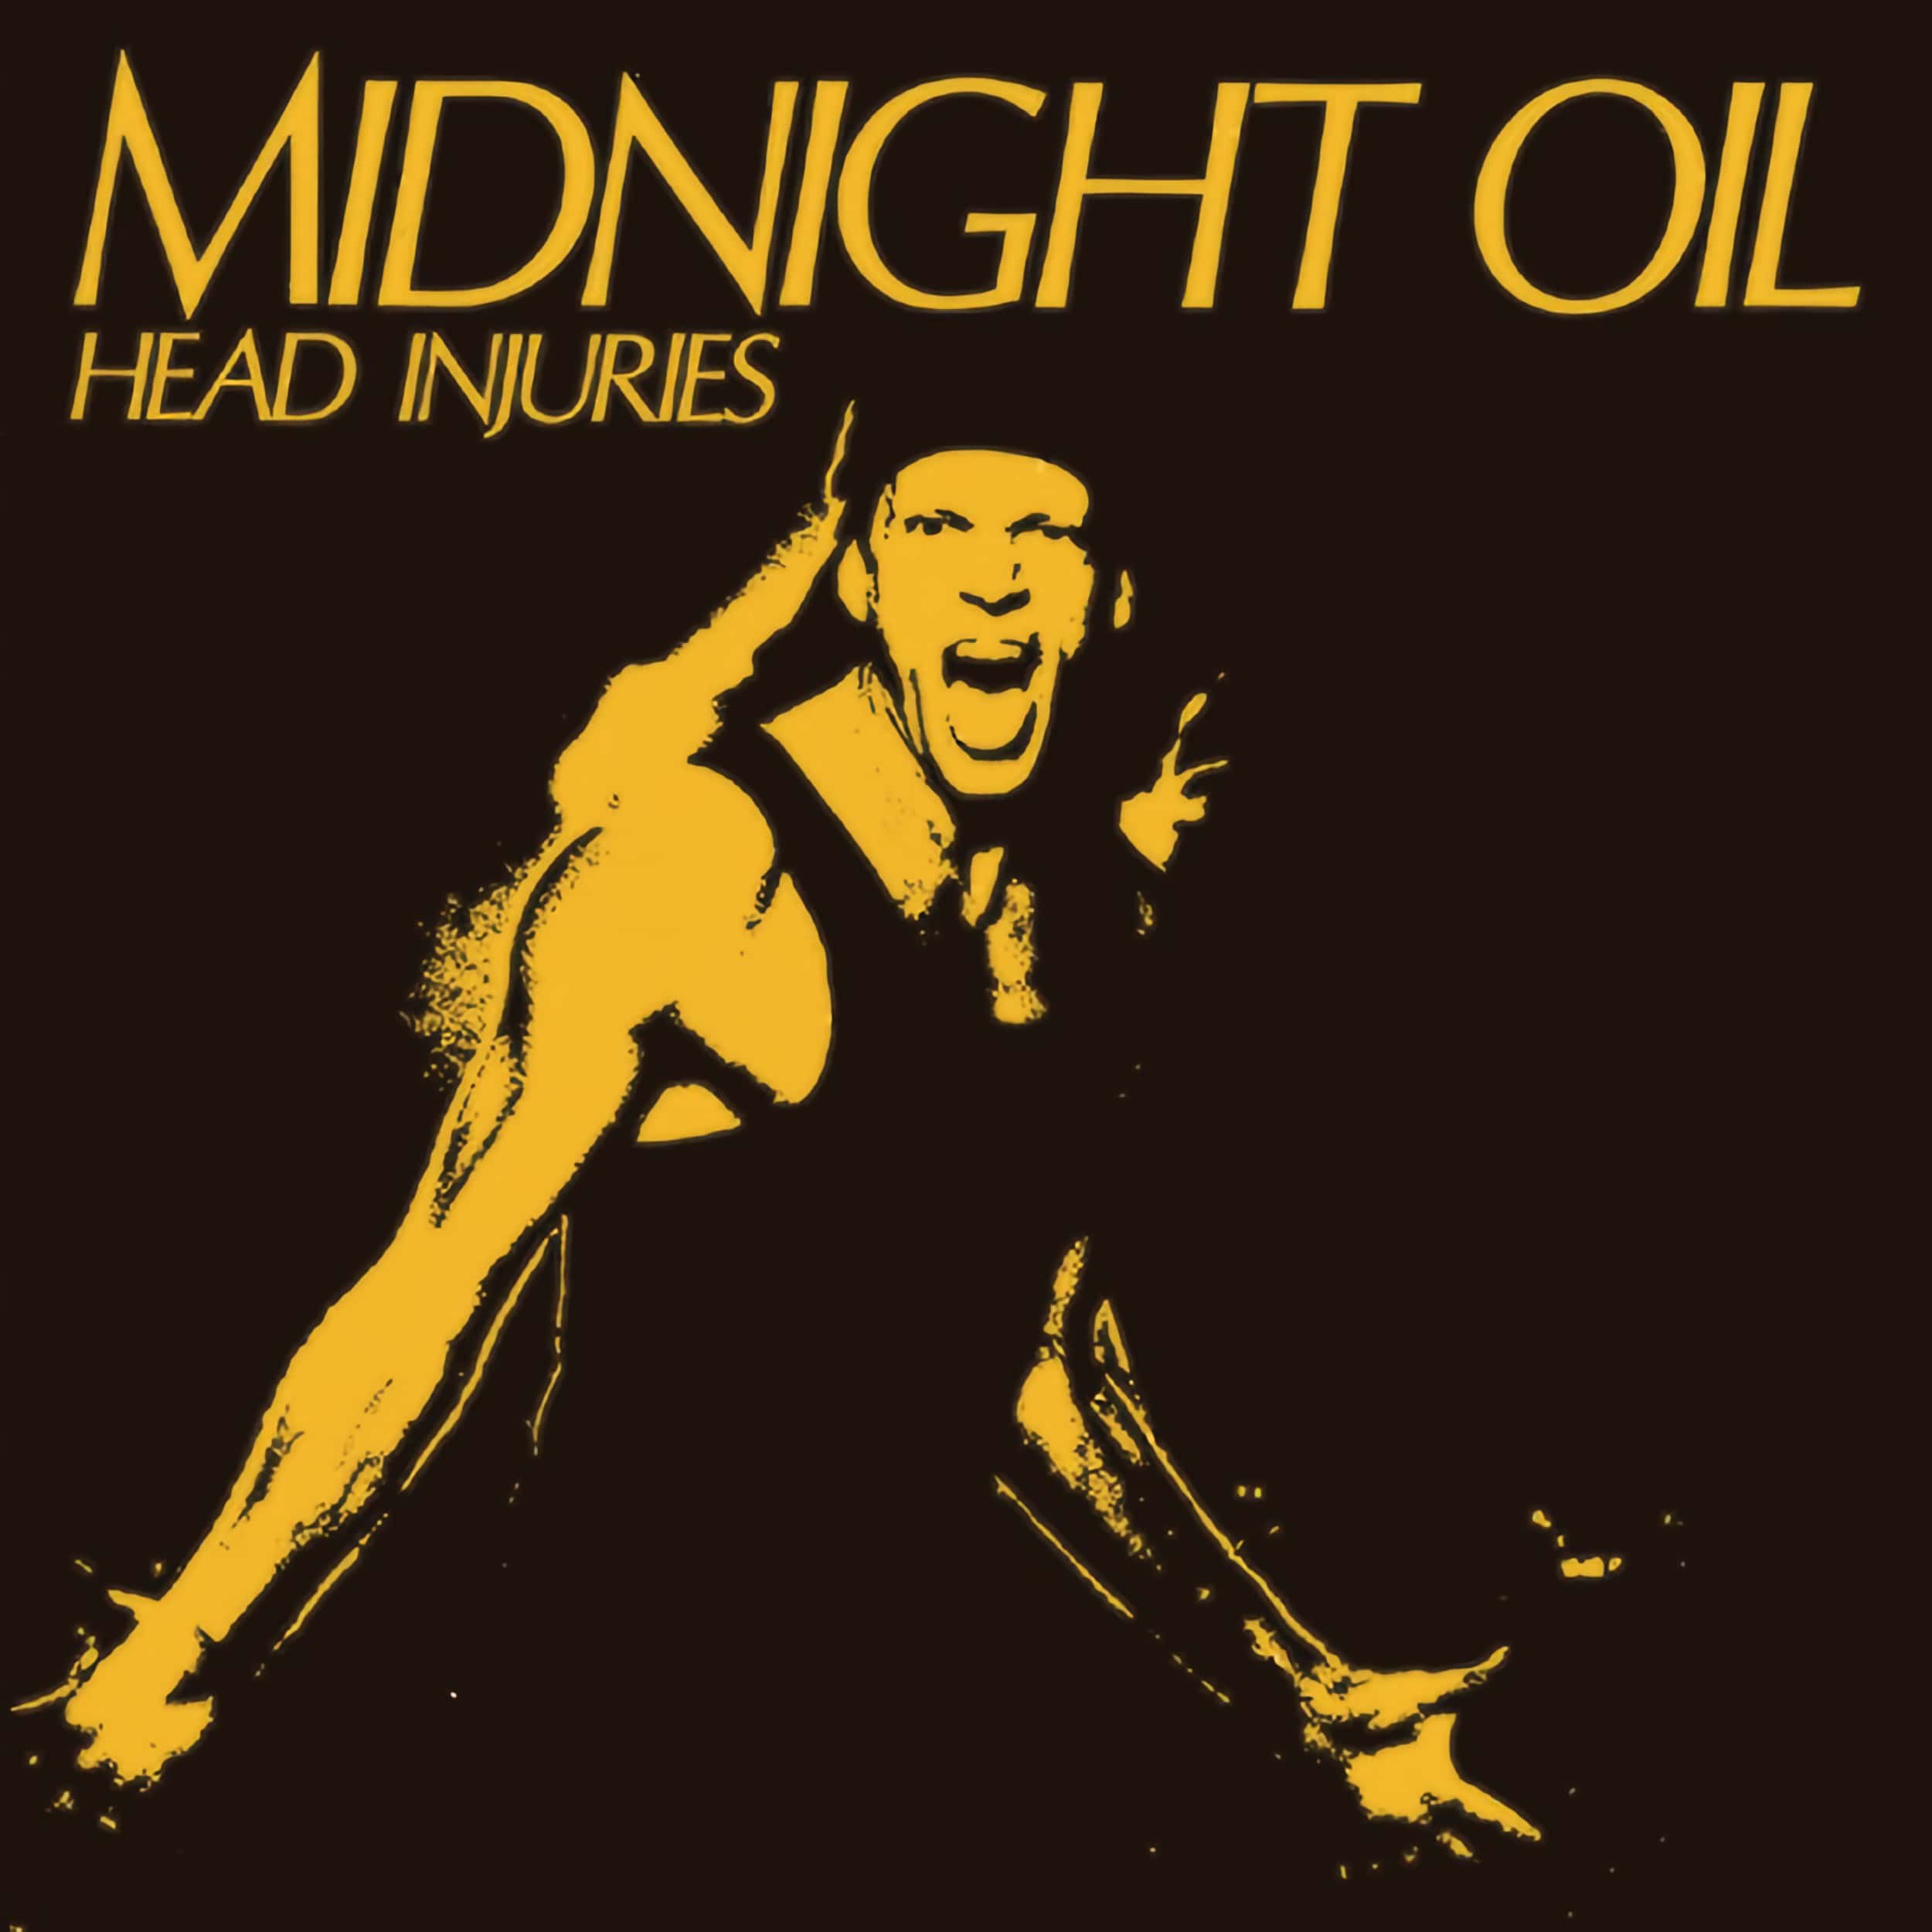 Midnight Oil – Head Injuries